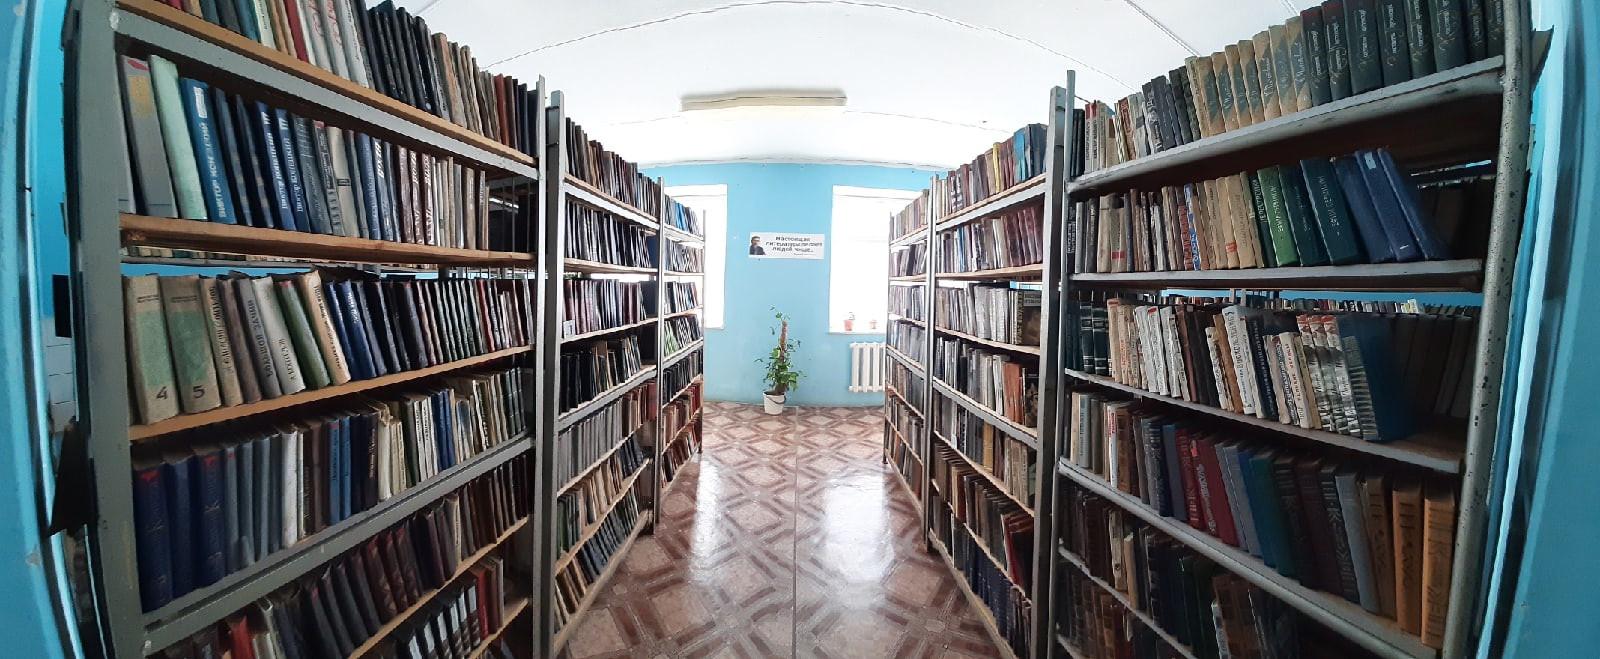 Центральная библиотека пгт Килемары